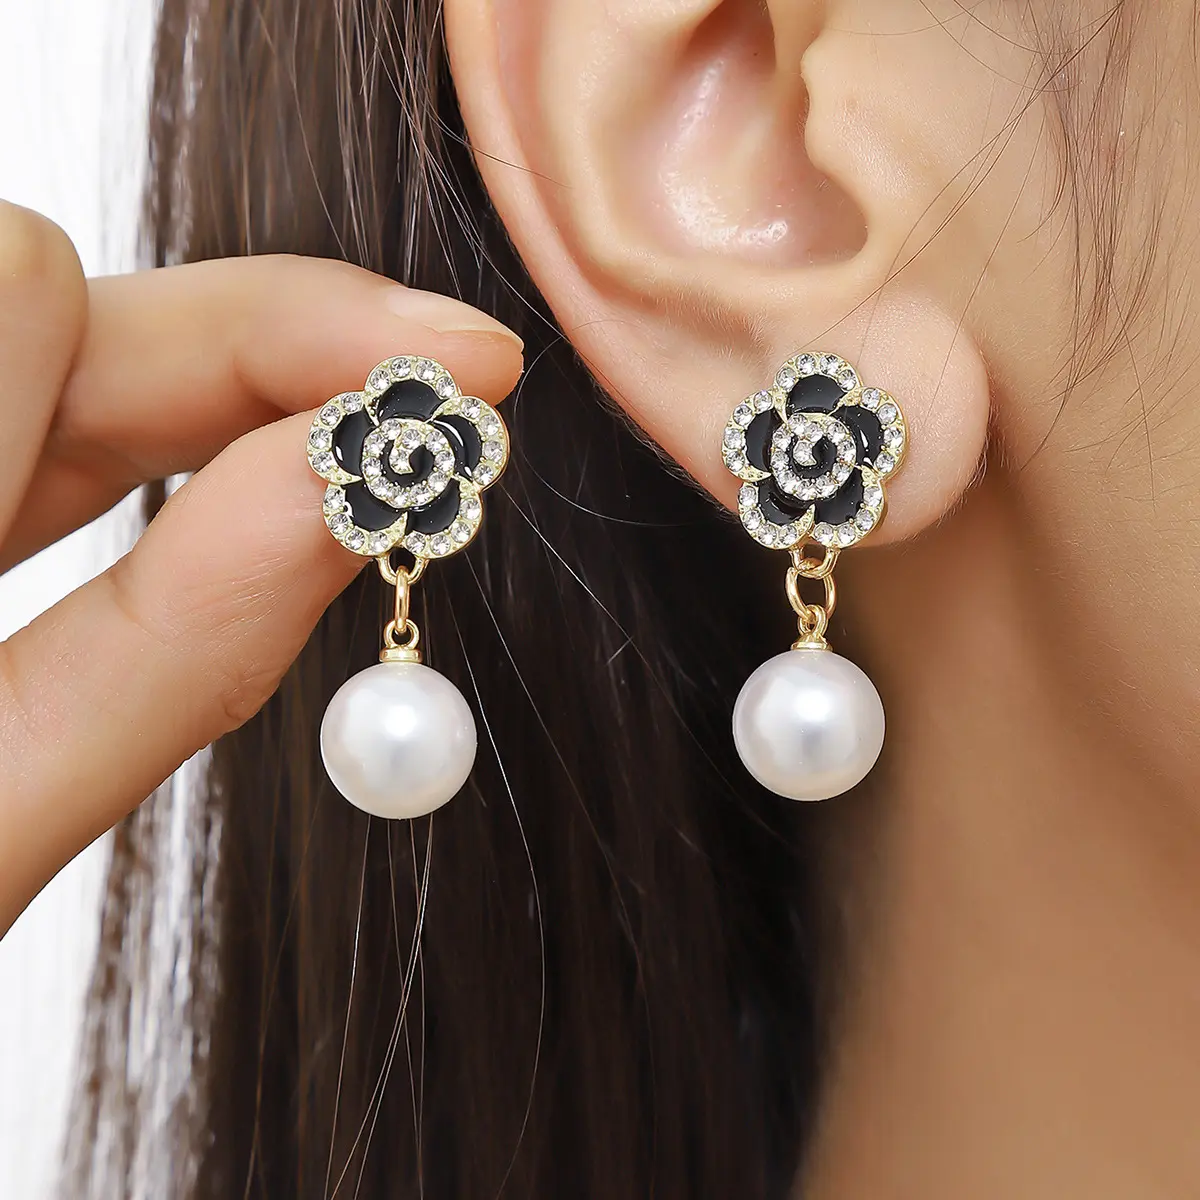 Dangle Drop Earrings Black Rose Flower Imitation Pearl Fashion Drop Earrings For Women